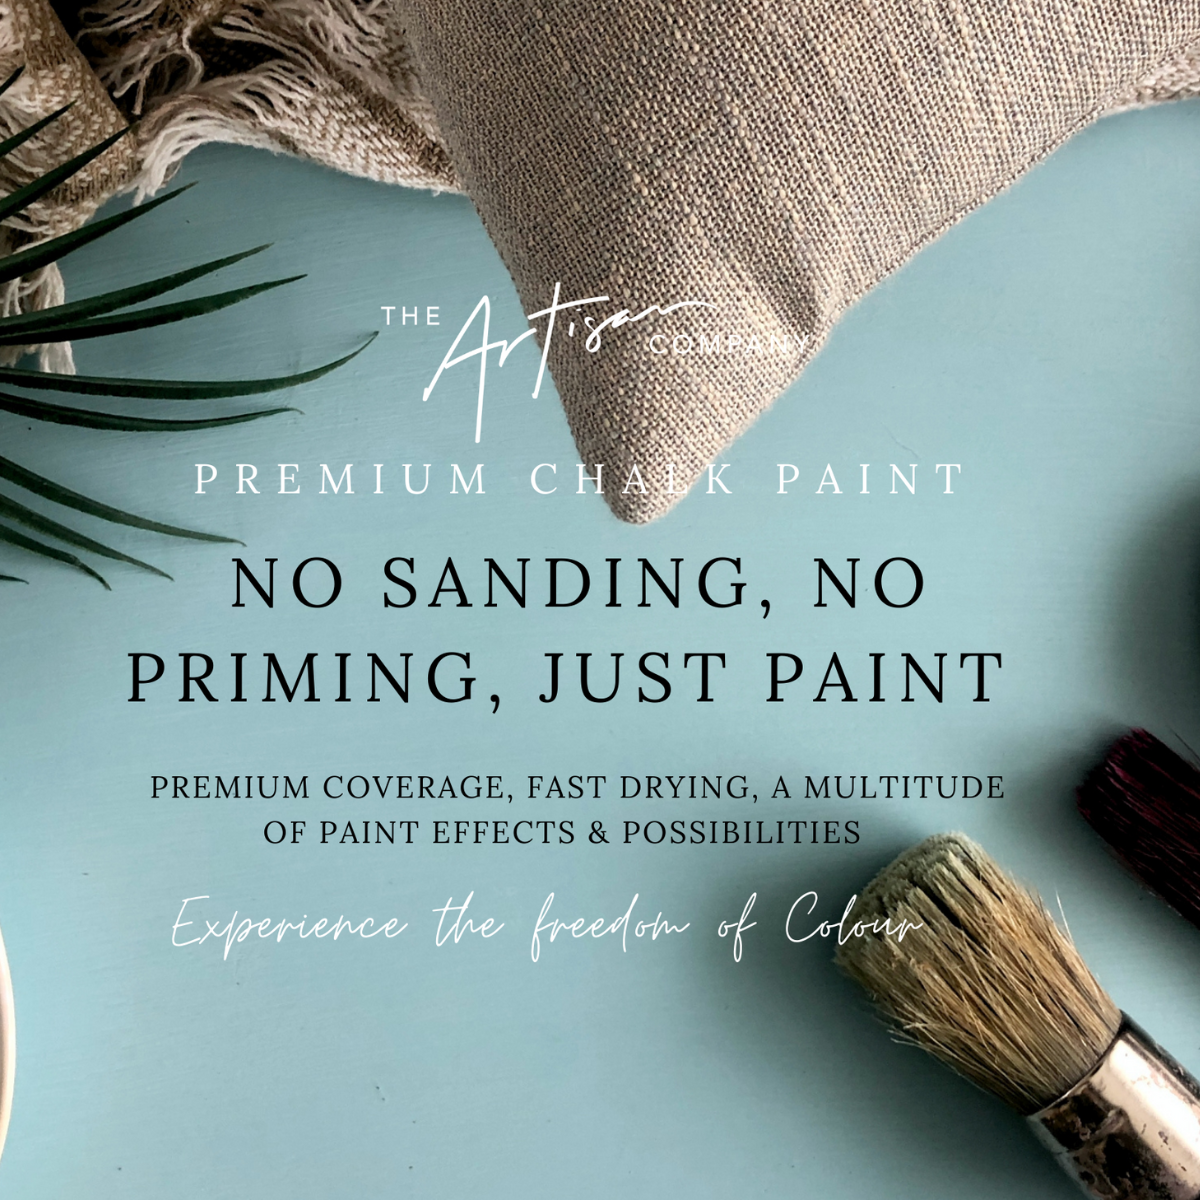 No Sanding, No Priming, Premium Chalk Paint